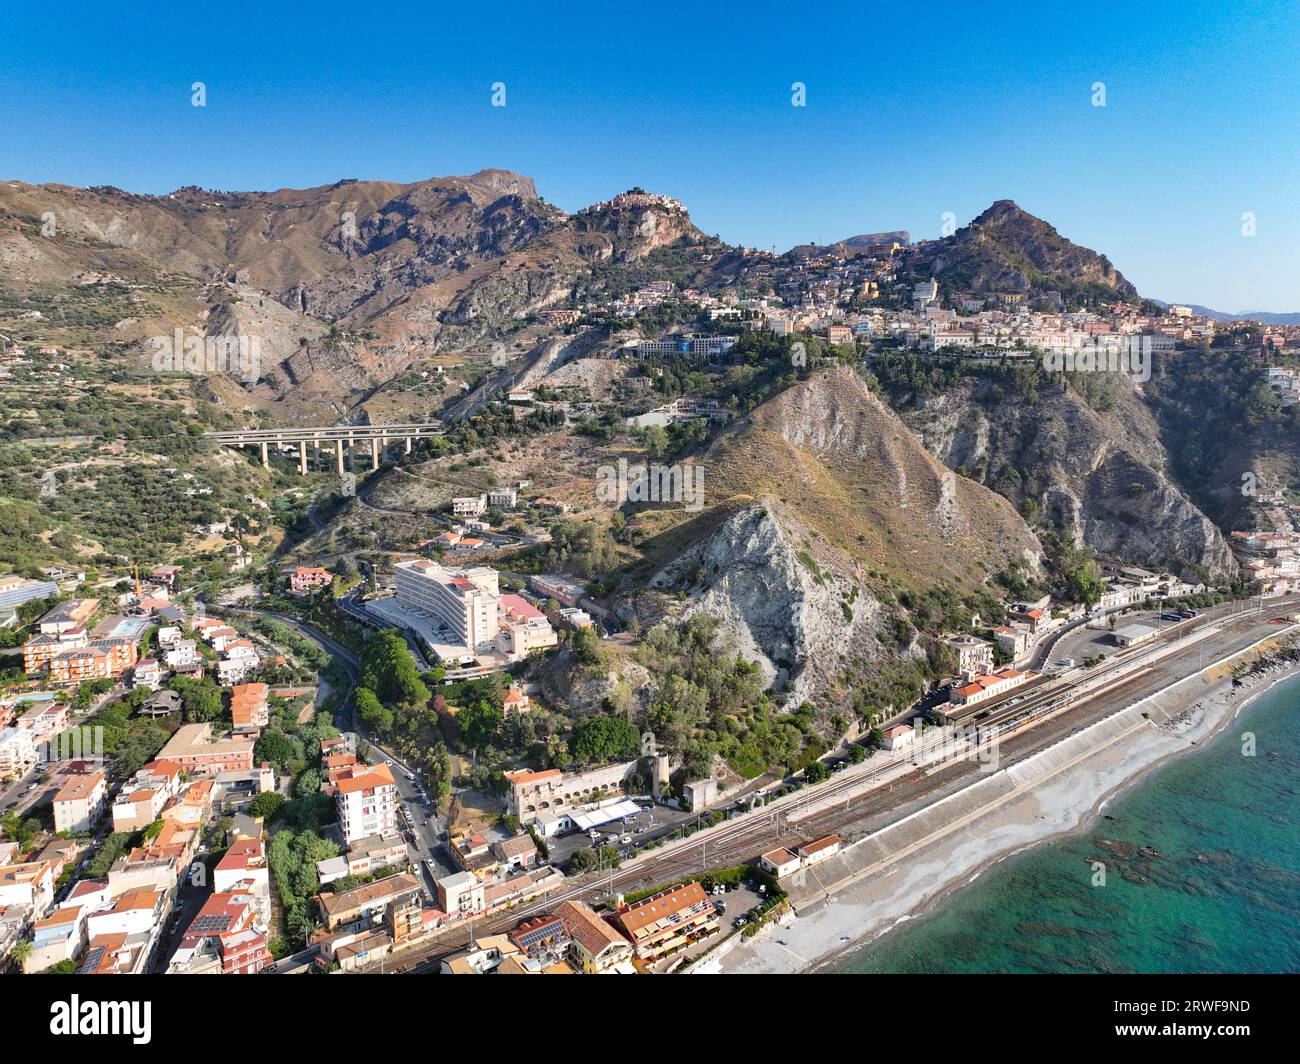 Veduta panoramica su Giardini Naxos, Taormina e Castelmola veduta panoramica aerea dll'alto dal mare; Luoghi balneari per le vacanze estive in Sicilia Stock Photo